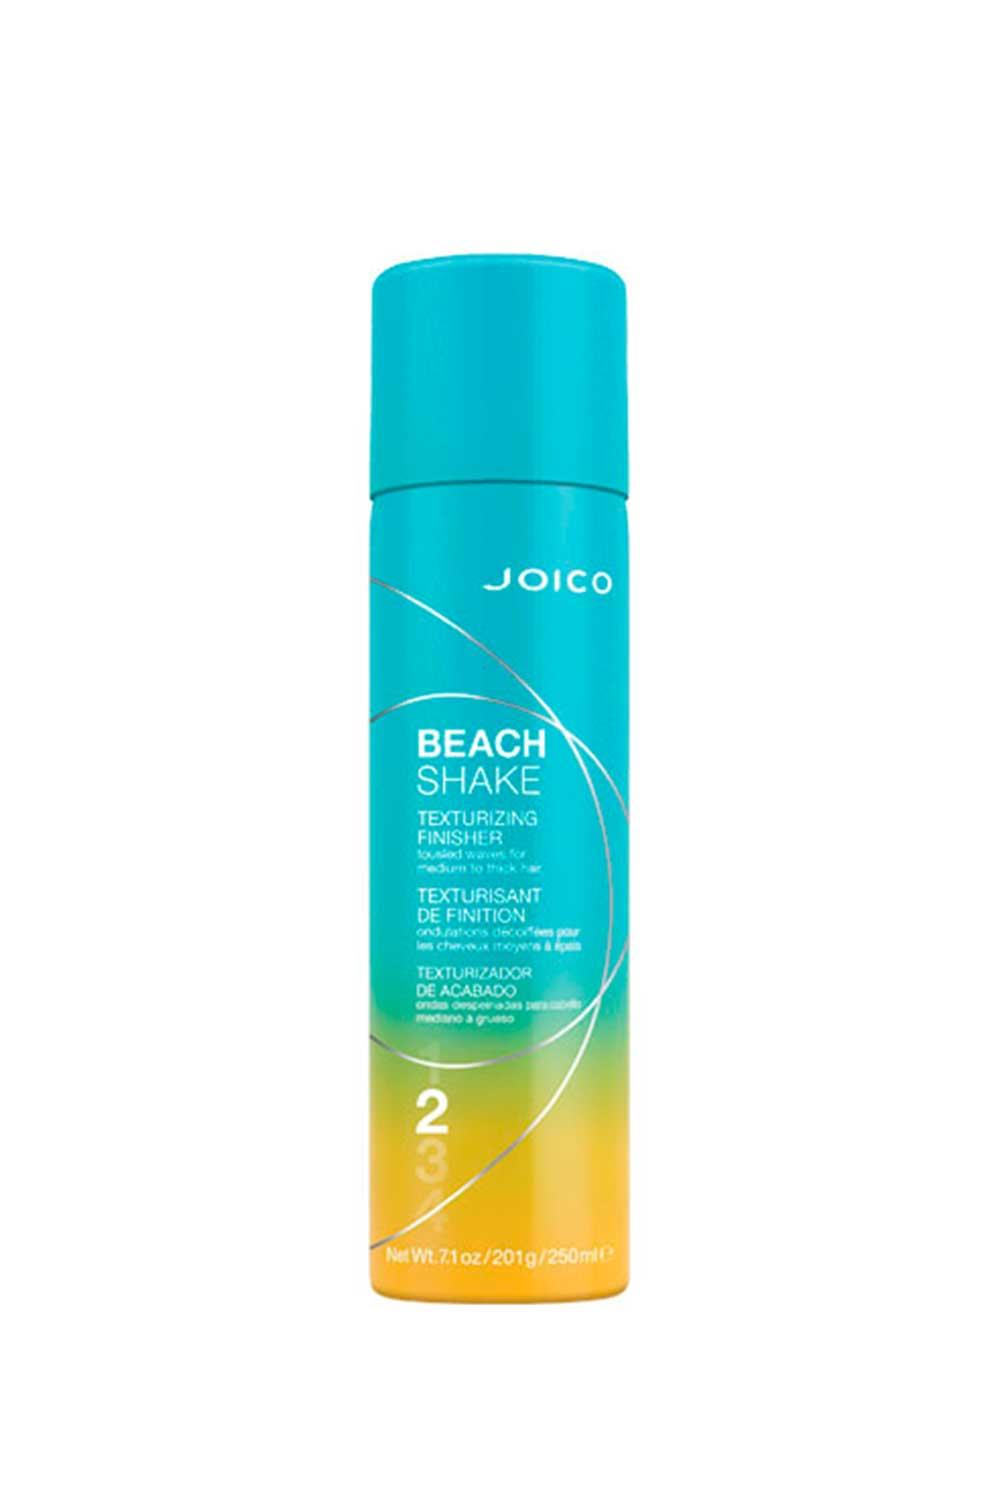 Joi4. Spray texturizador de peinado Beach Shake, Joico